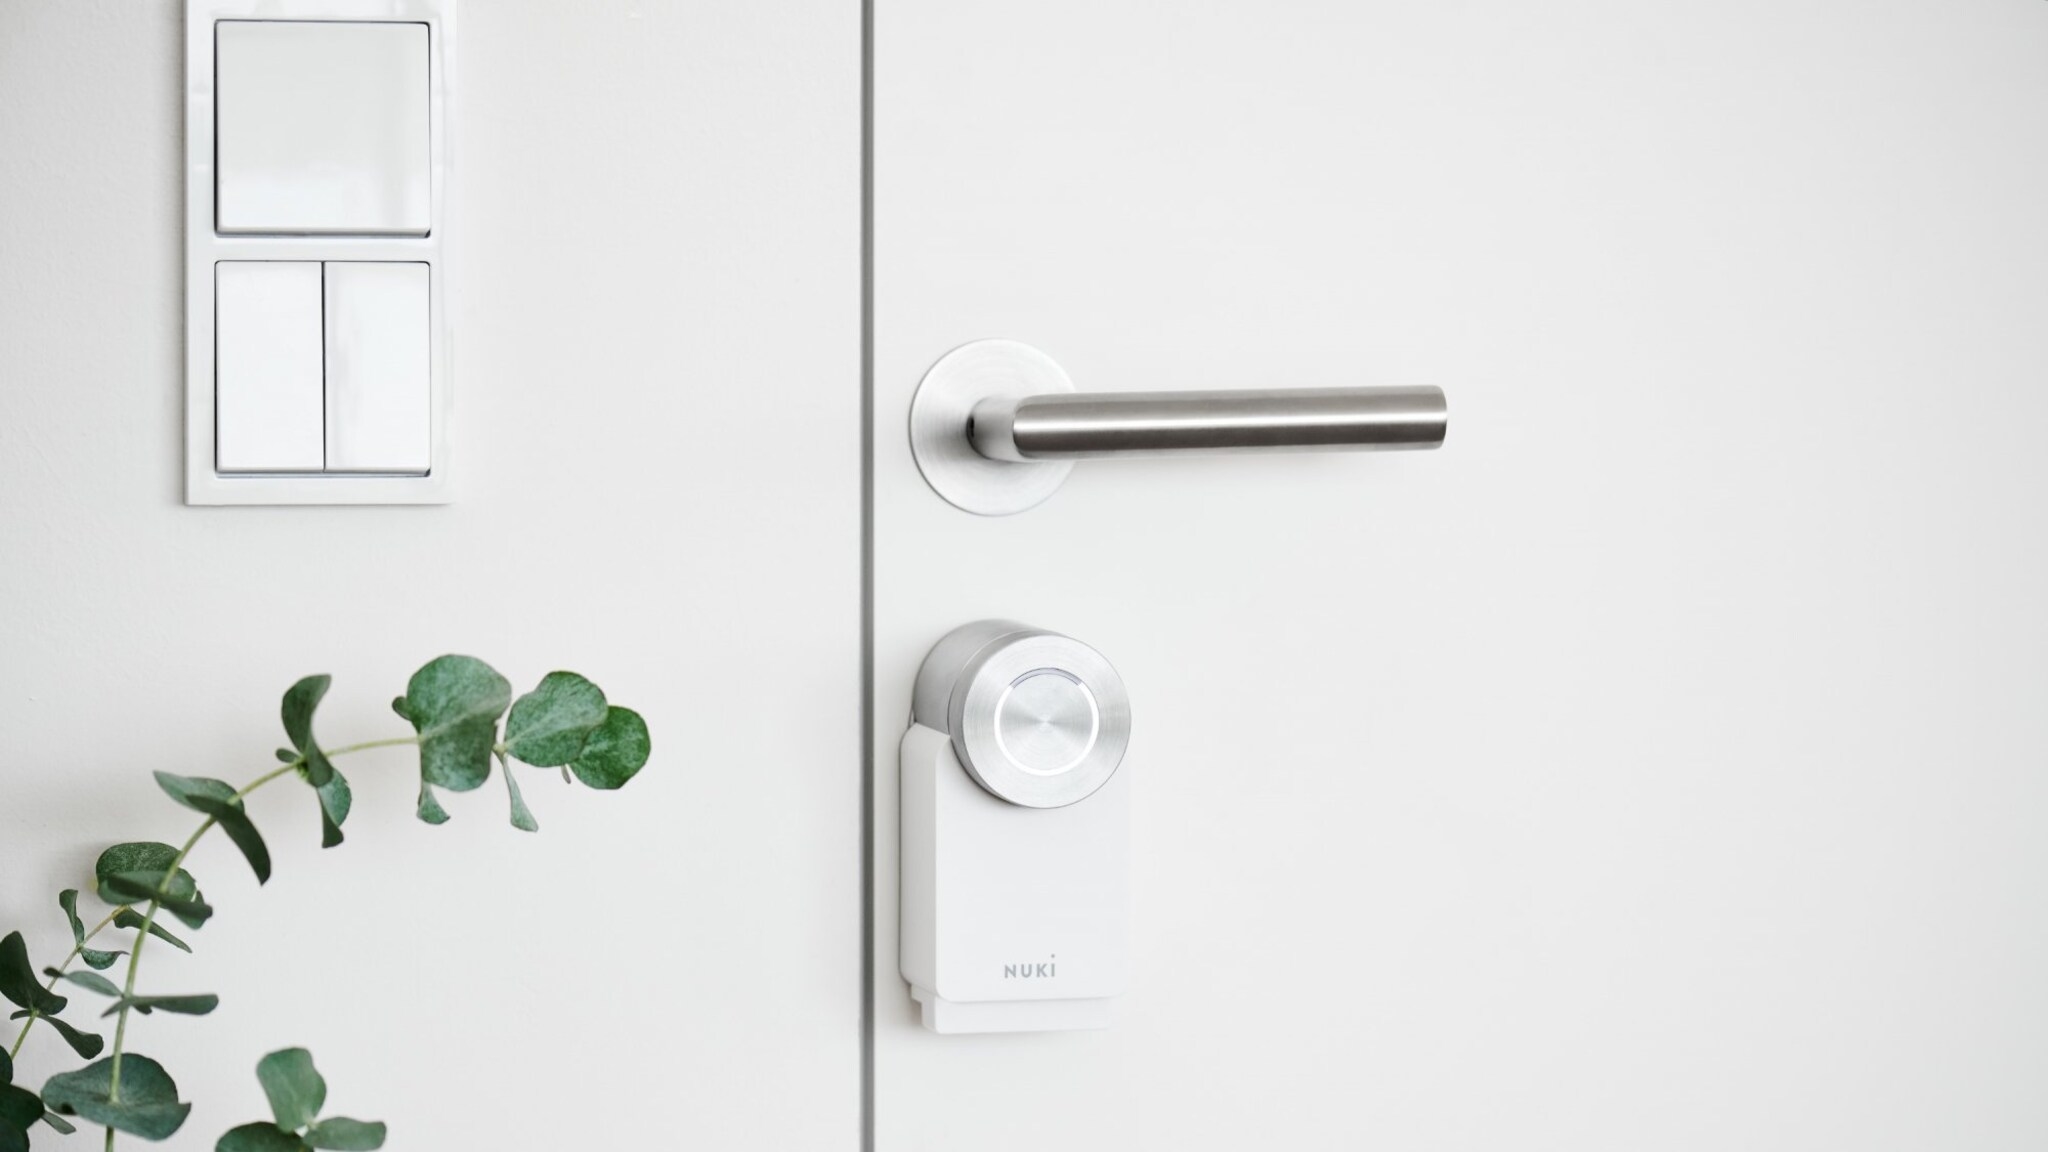 Nuki Smart Lock : serrure connectée pour la porte d'entrée de votre  domicile - De la roue à l'intelligence artificielle, les innovations et les  inventions qui révolutionnent le monde !